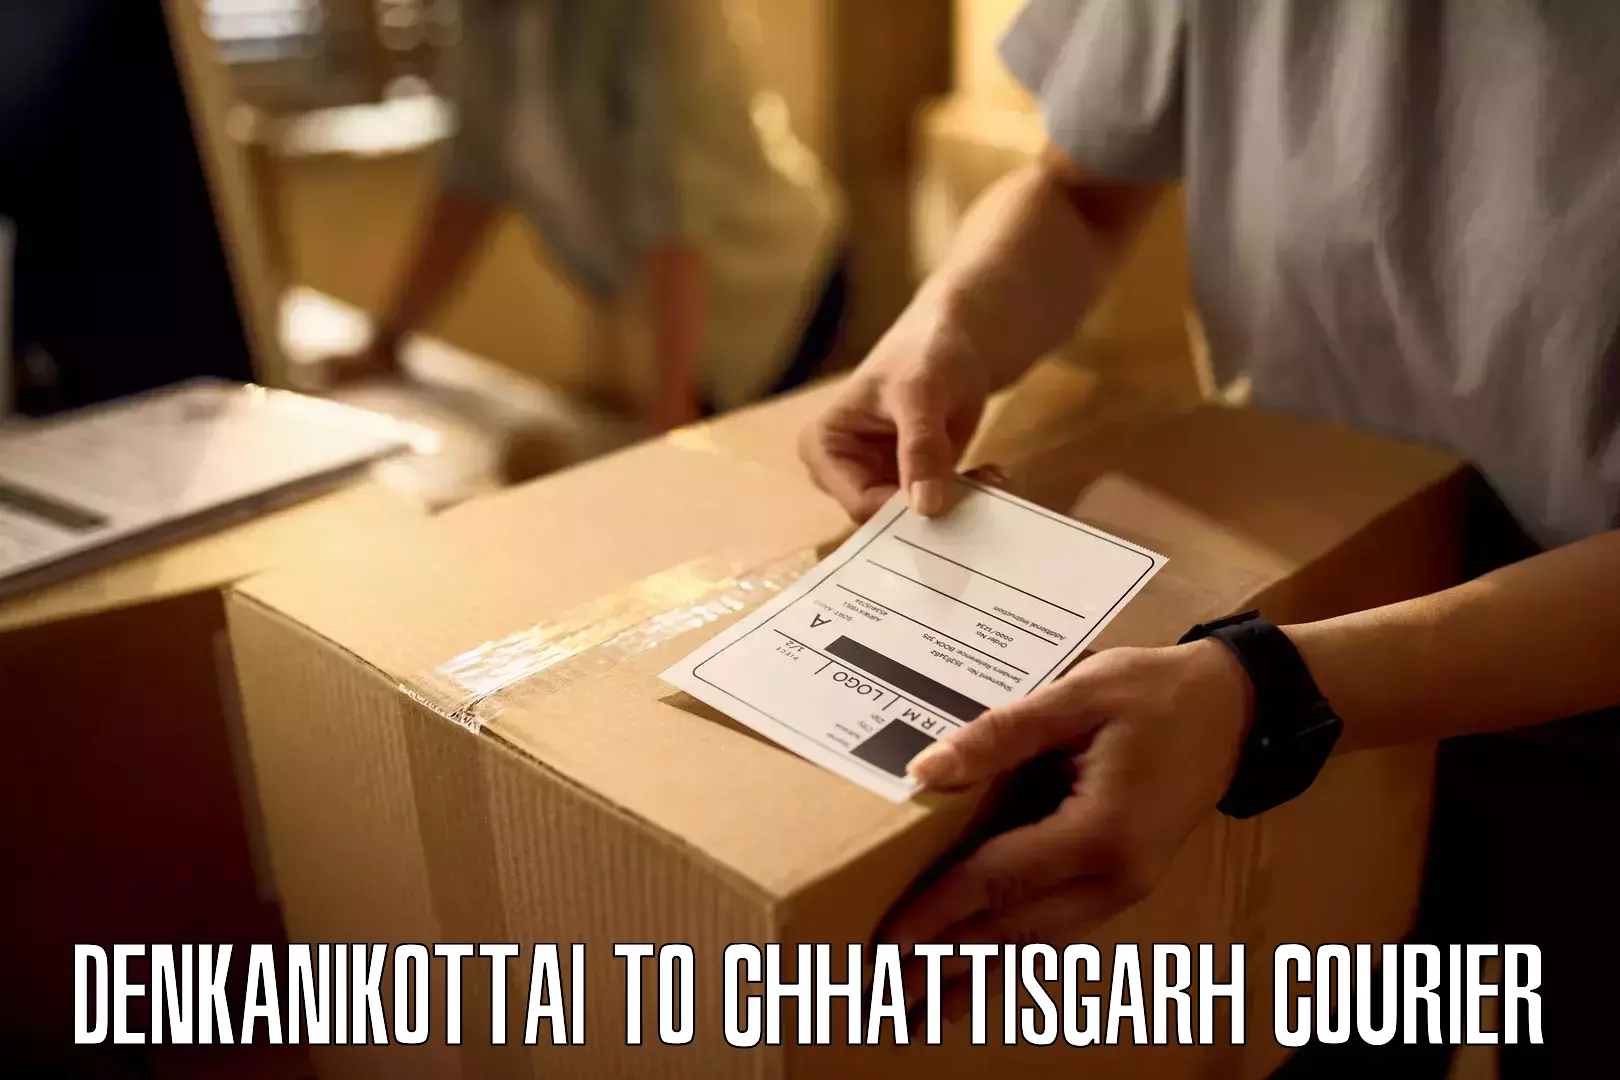 Smart courier technologies Denkanikottai to Saraipali